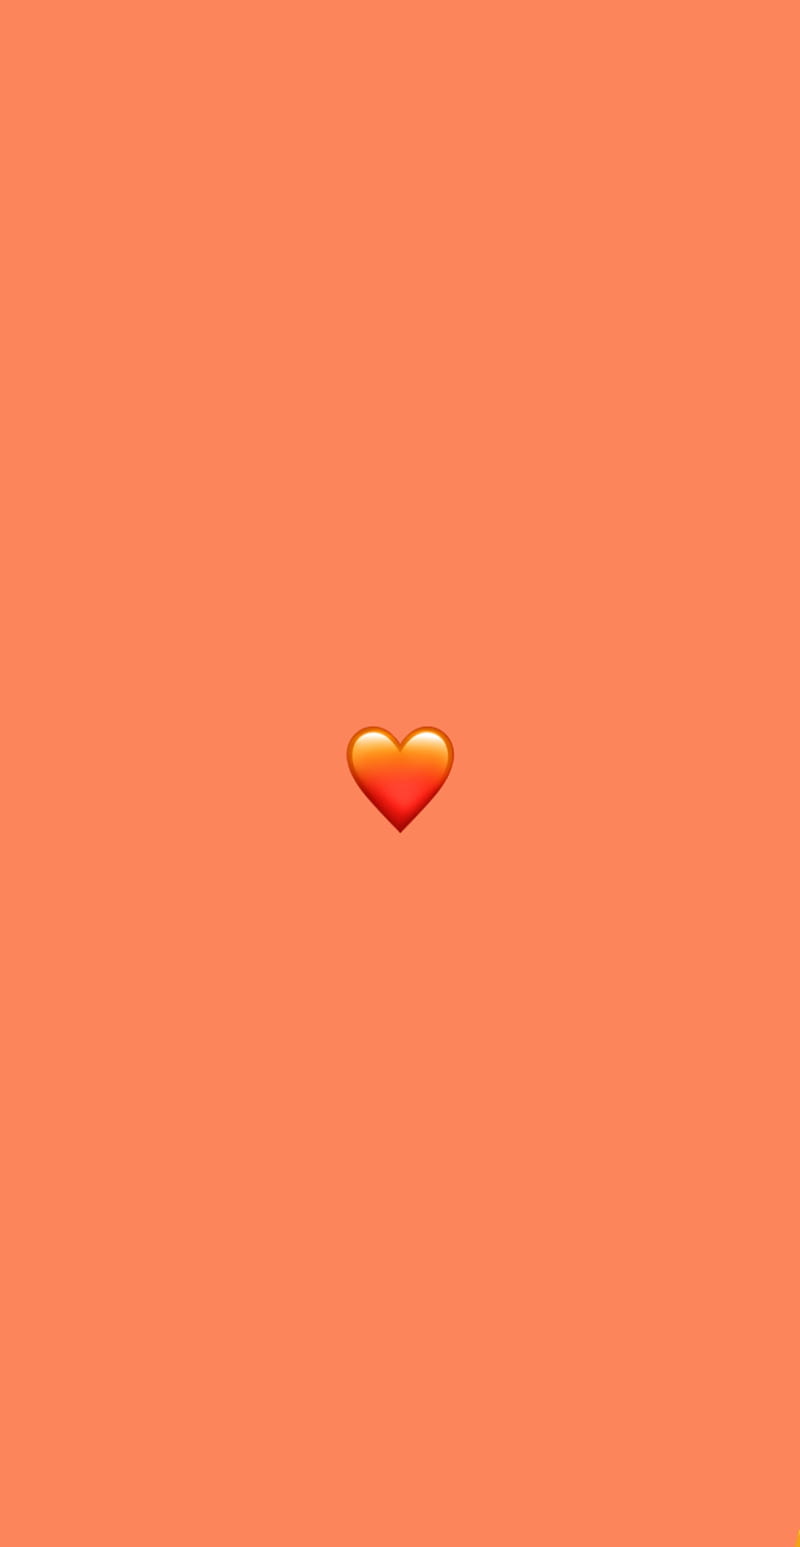 Với hình nền đầy đủ độ phân giải cao, những trái tim màu cam sẽ giúp bạn có được một trải nghiệm tuyệt vời trong việc trang trí không gian sống của mình. Hãy cùng khám phá thêm về những điều đáng yêu trong cuộc sống qua những hình ảnh đầy cảm hứng này.